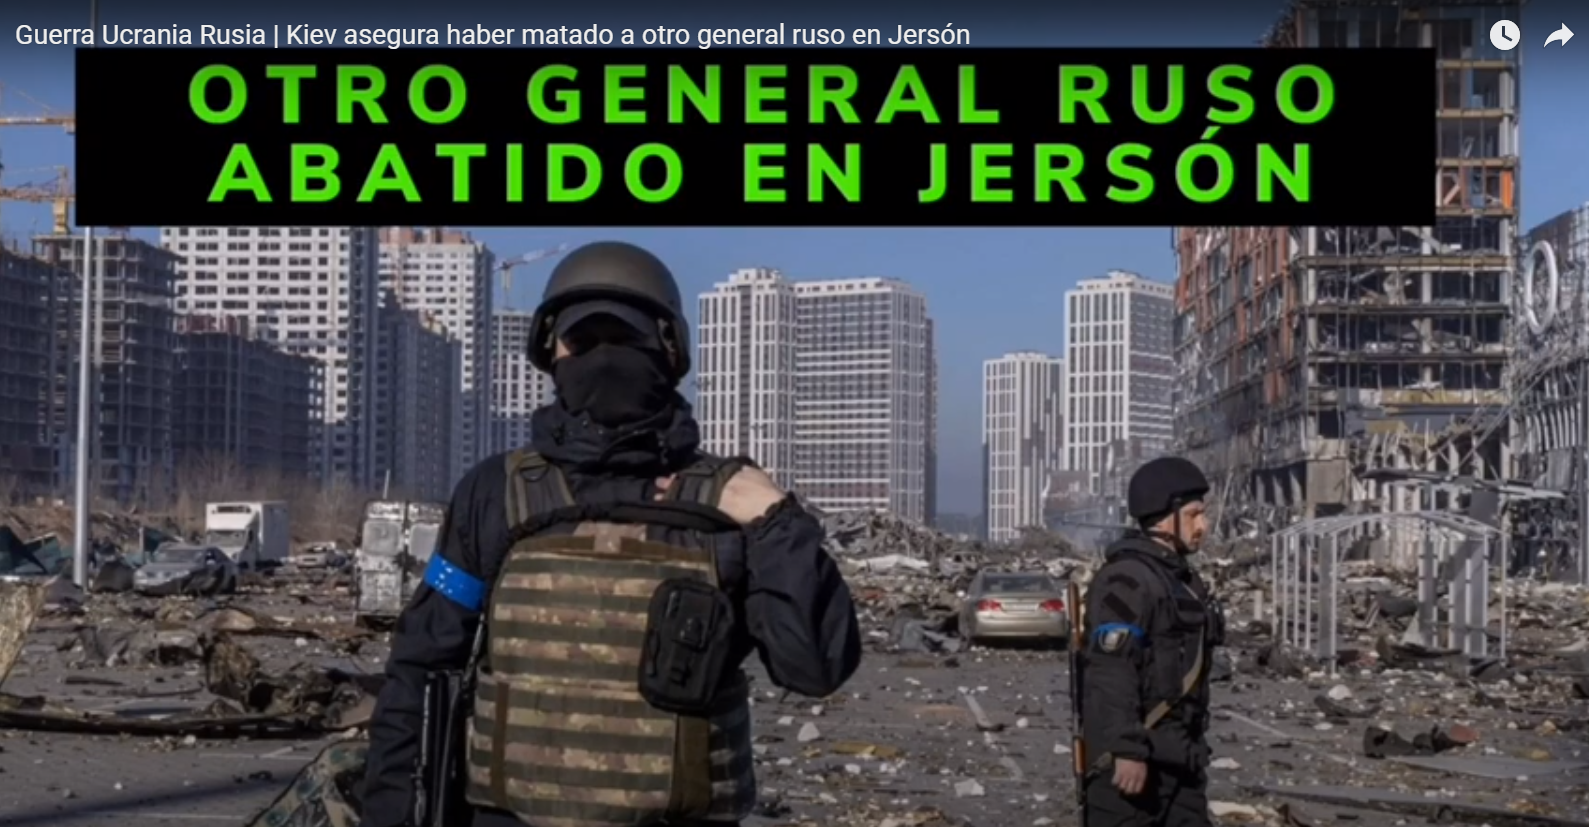 Kiev asegura haber matado a otro general ruso en Jersón